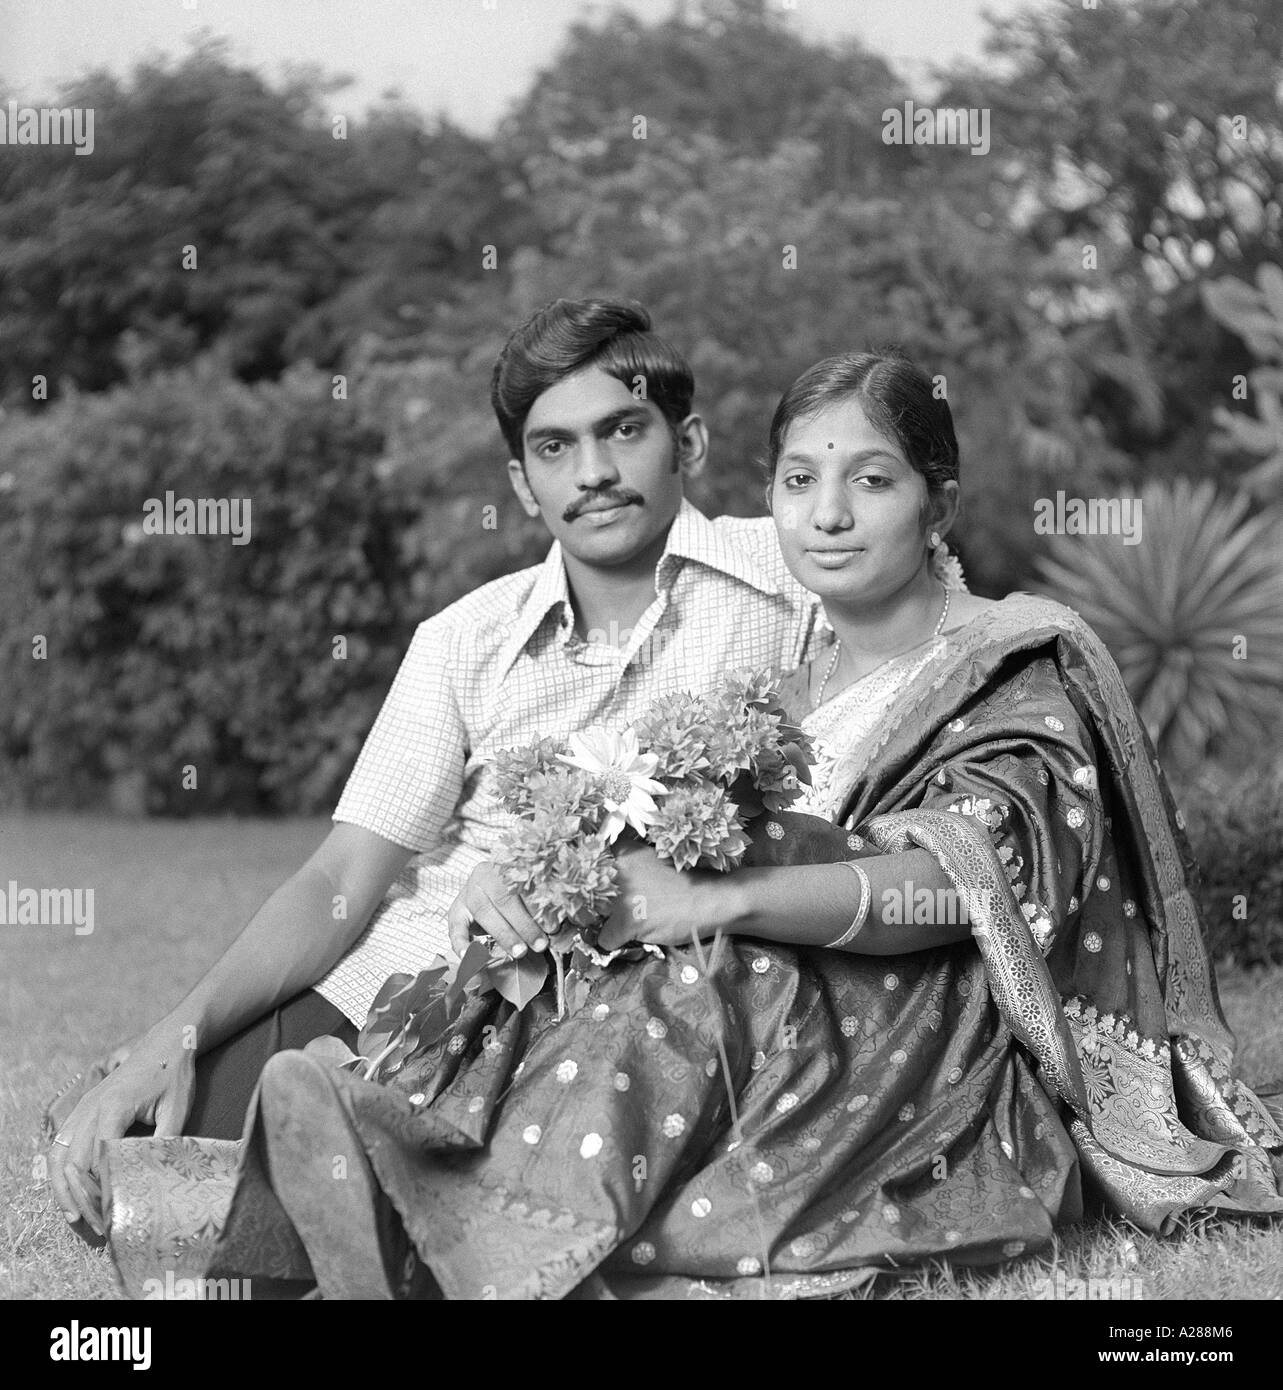 Indischer Mann Frau Mann Frau Paar sitzend liebevoll Garten Indien Asien Indisch Asiatisch alter Jahrgang 1900s Bild MR#777A dpa-76615-maa Stockfoto